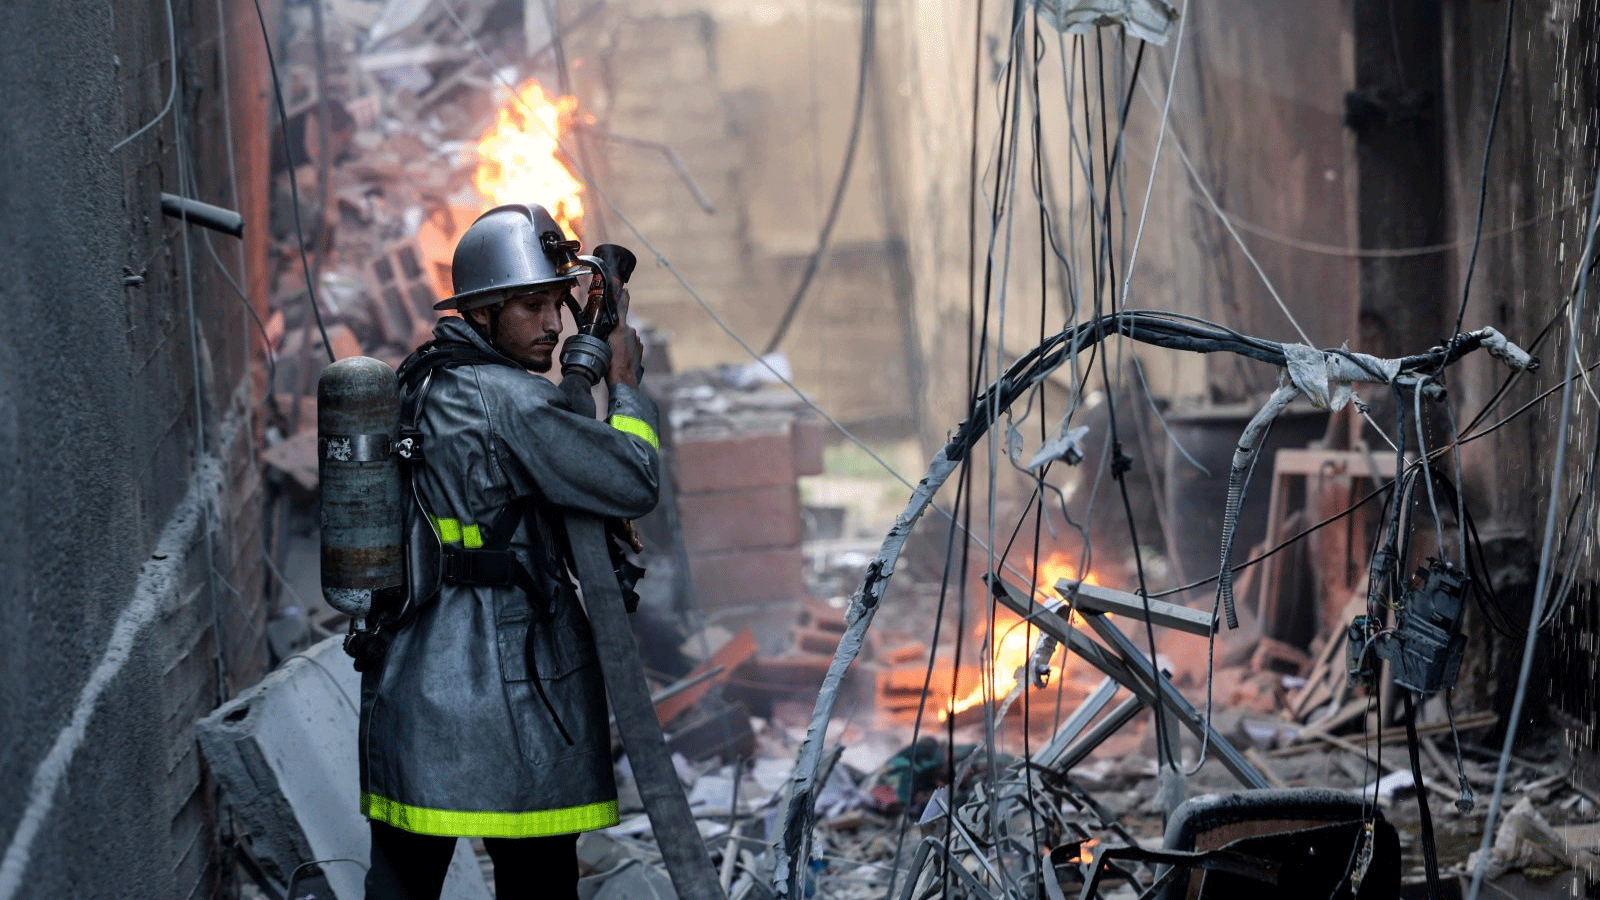 رجل إطفاء فلسطيني يتصدى للحريق وسط الدمار الذي أعقب غارة جوية إسرائيلية على مدينة غزة، فلسطين، 5 آب\أغسطس 2022